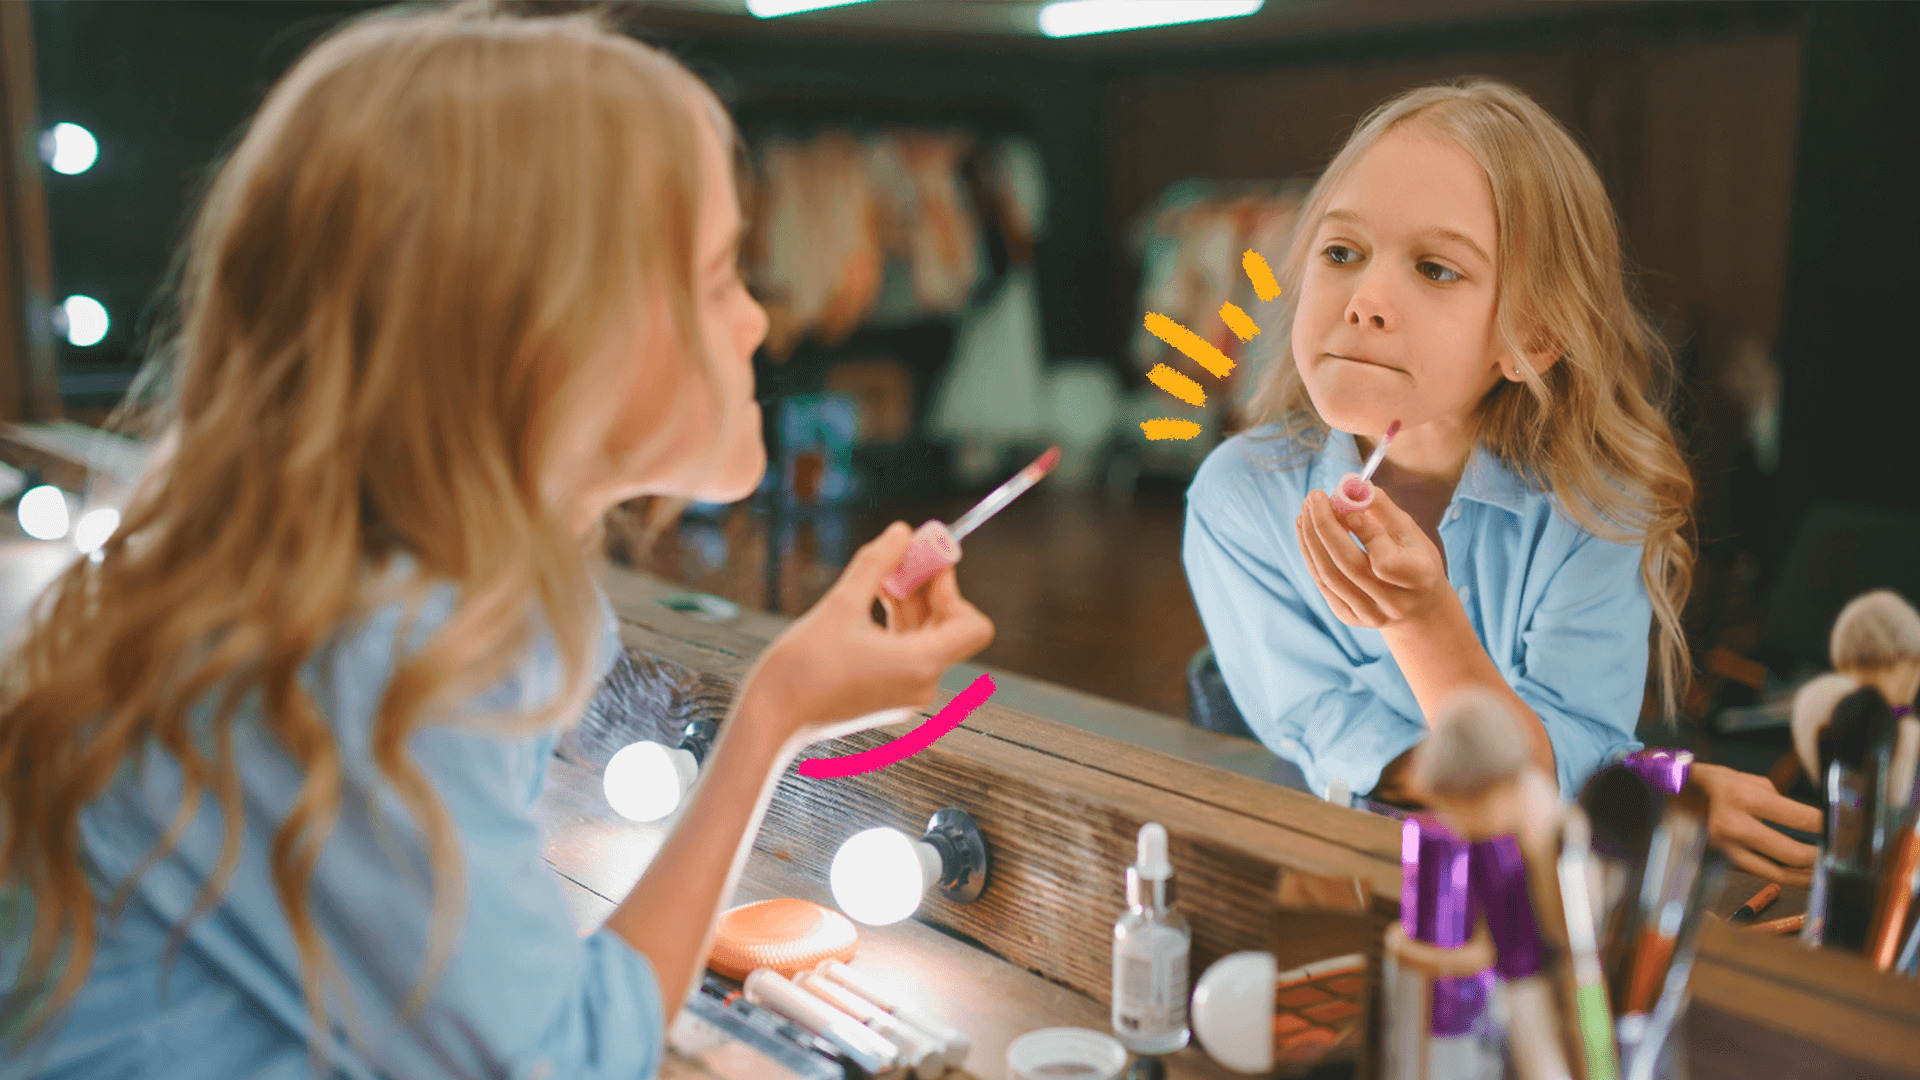 Imagem de capa para matéria sobre maquiagem para crianças mostra uma menina loira de cabelos longos passando batom diante do espelho, em uma penteadeira com outros produtos na mesa.